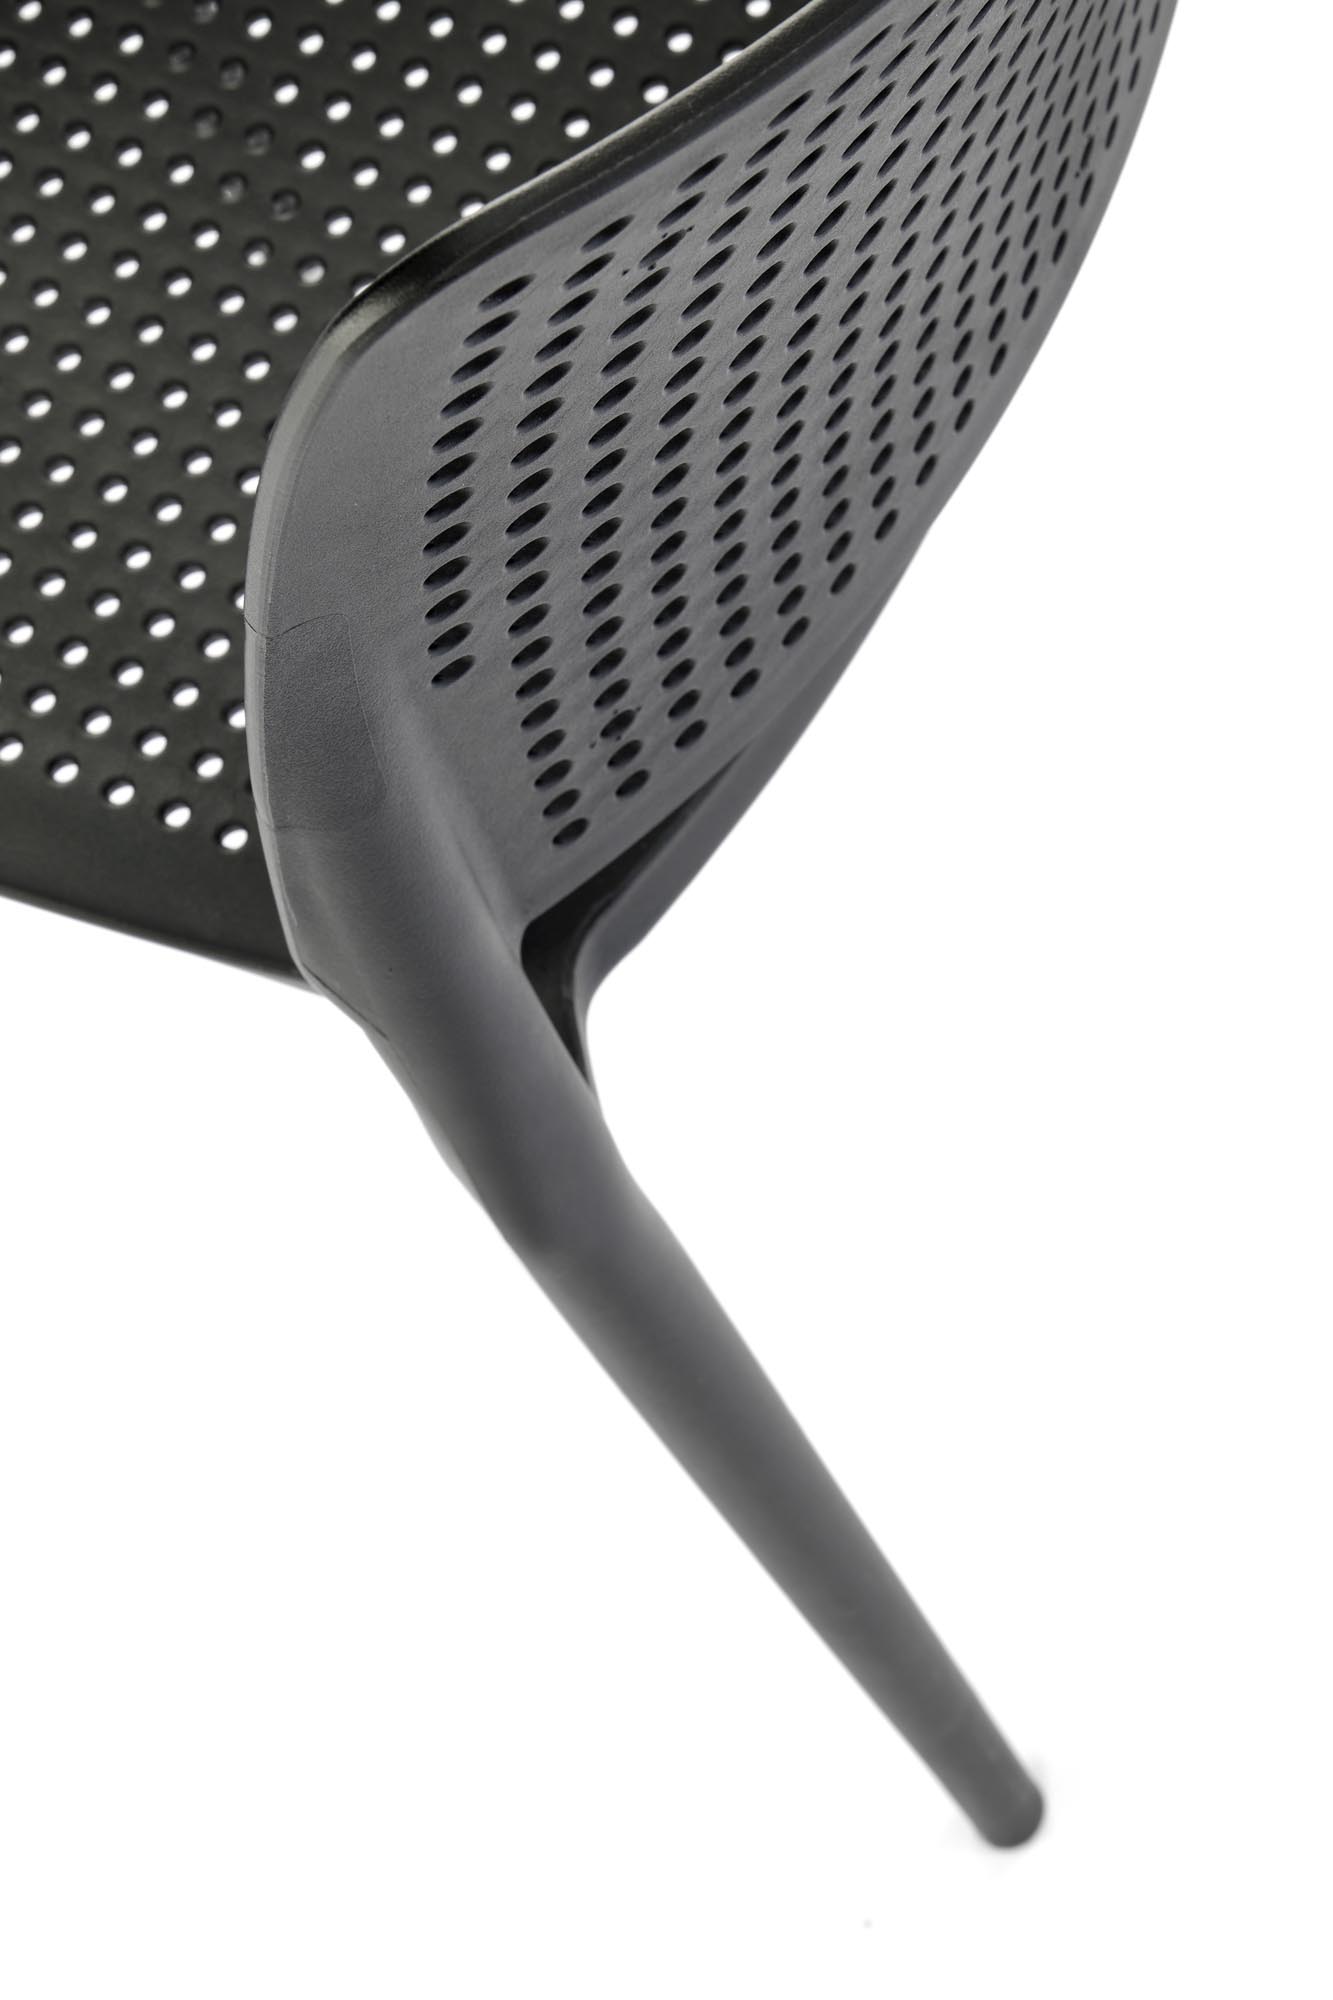 Scaun plastic K514 - negru Židle z tworzywa k514 - Černý